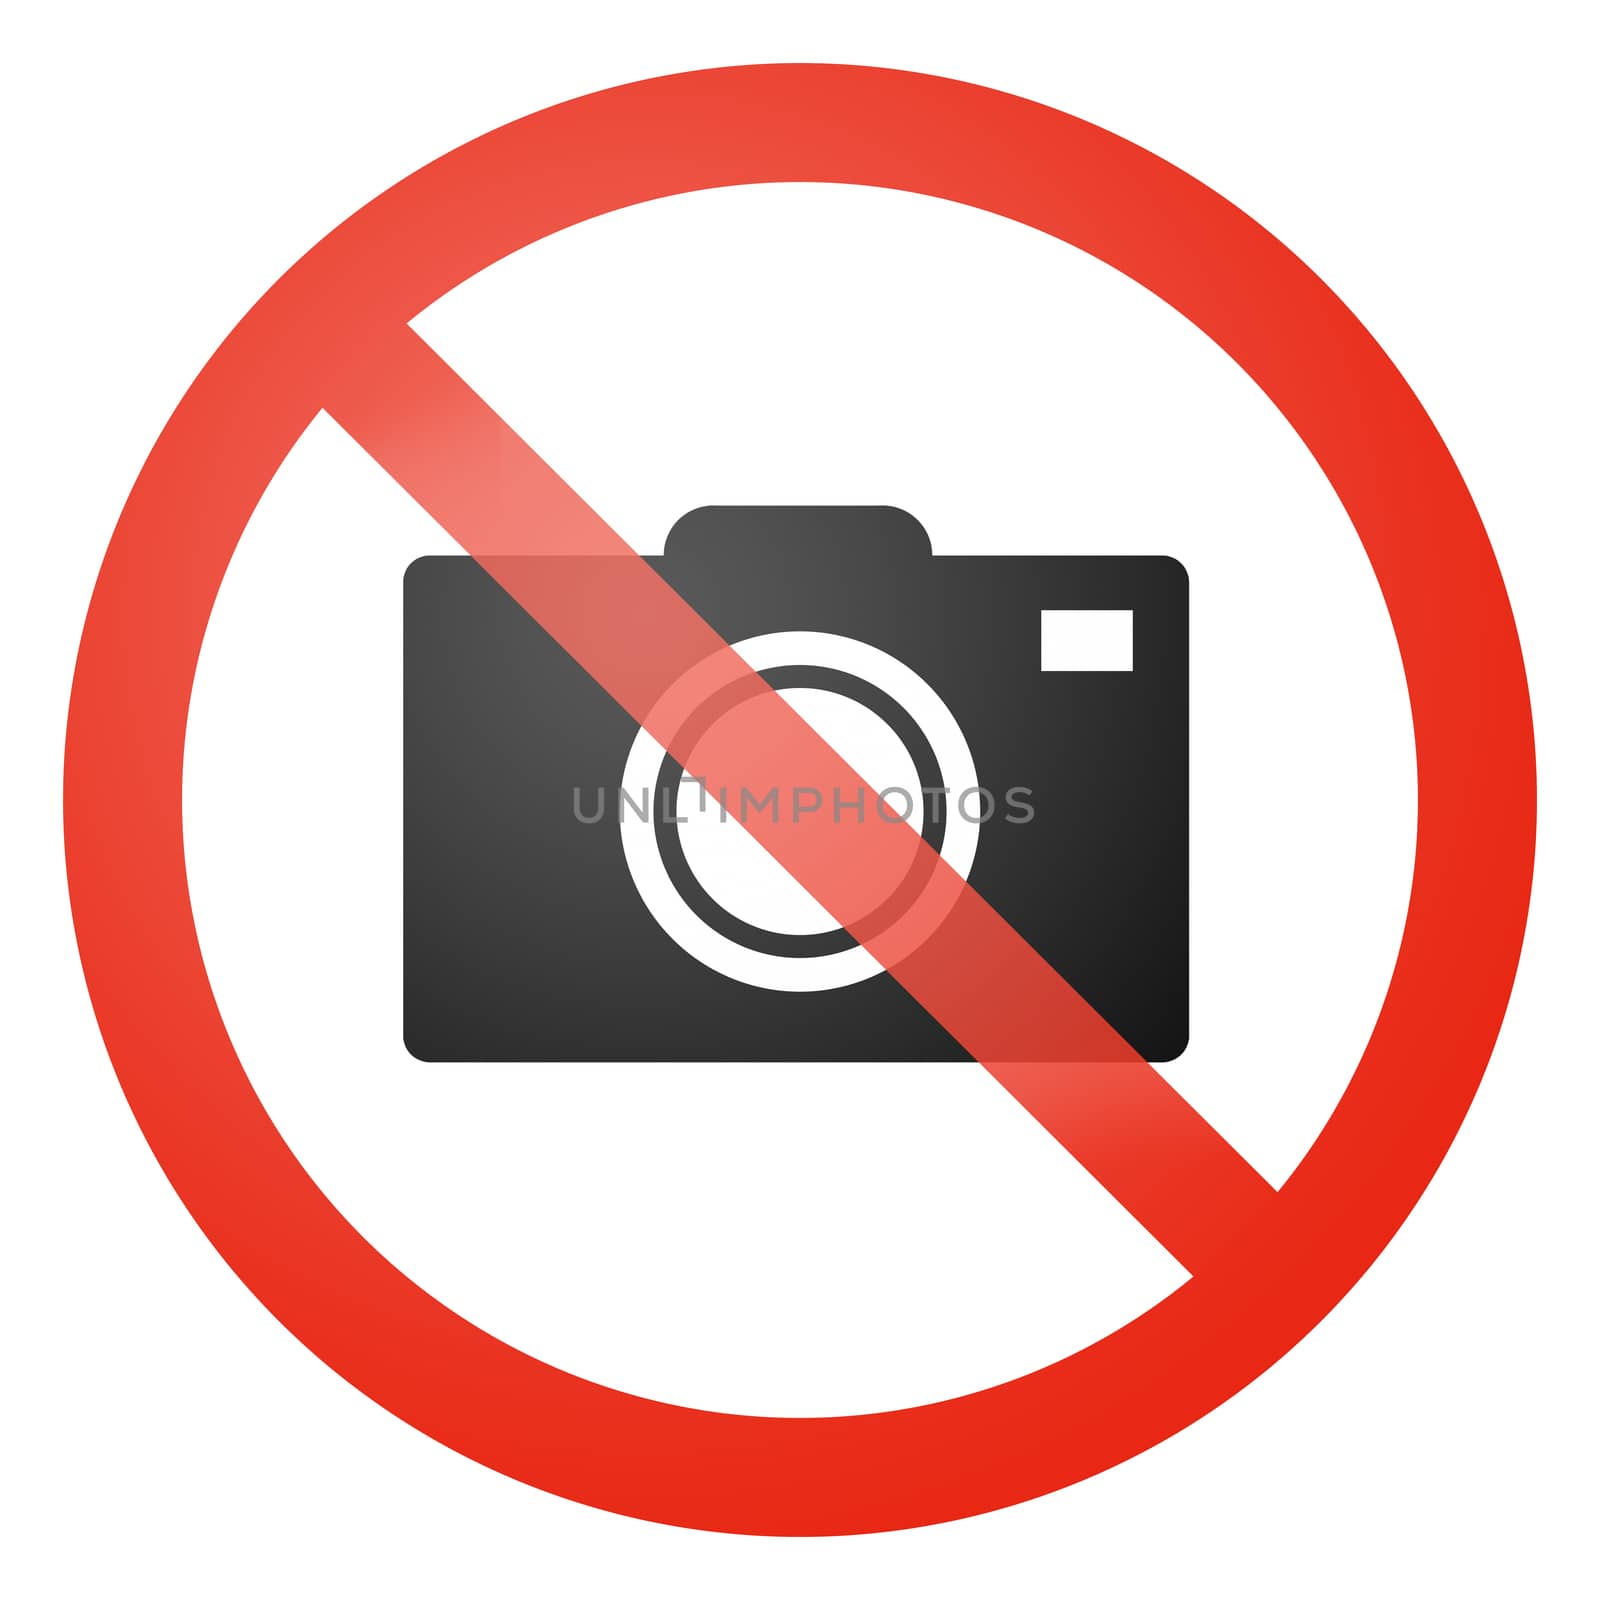 No photos allowed sign by aldorado